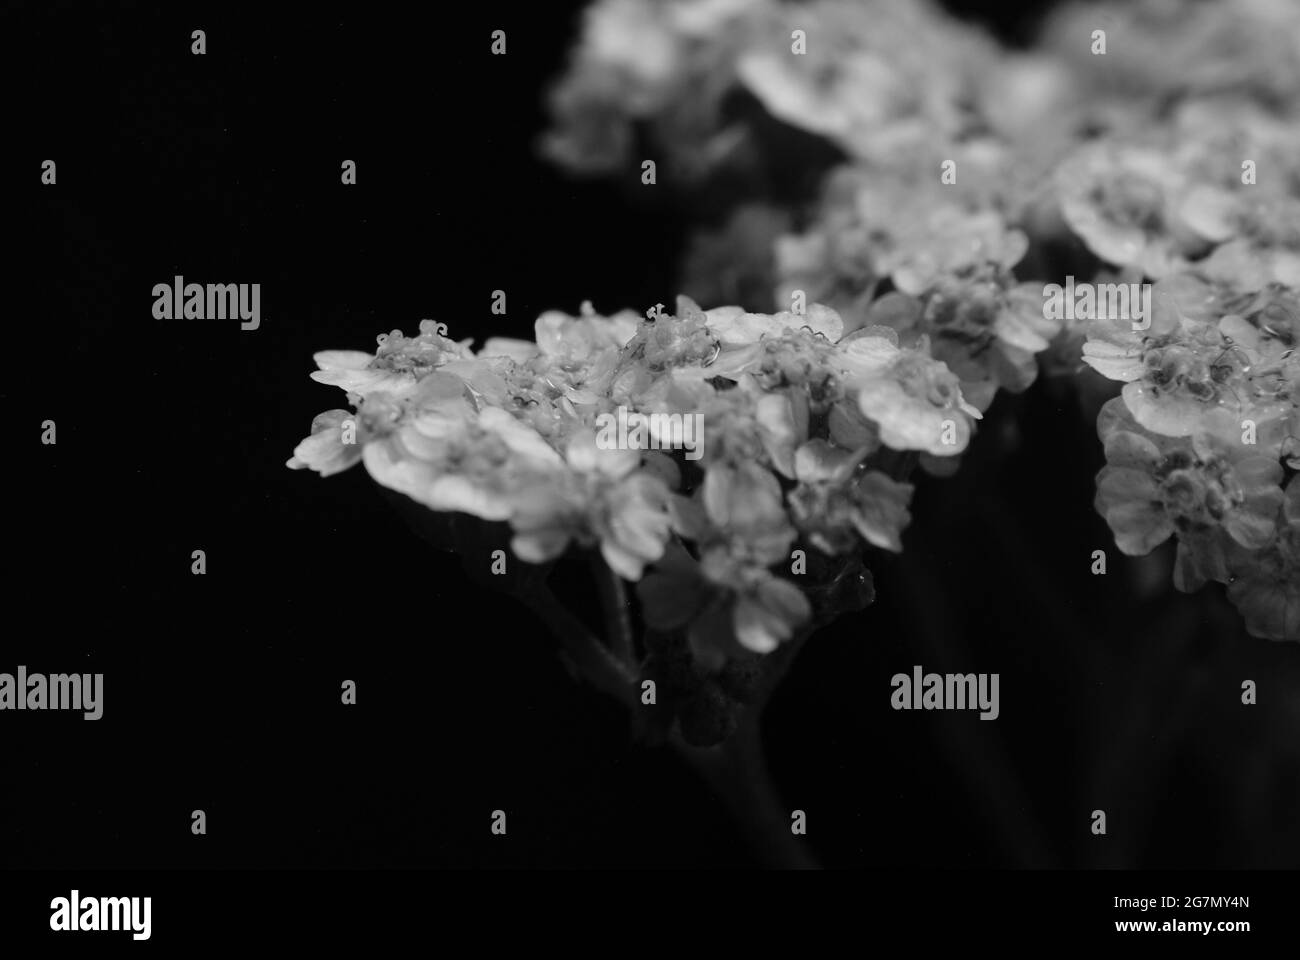 Primo piano immagine in scala di grigi di delicati fiori fioriti Foto Stock